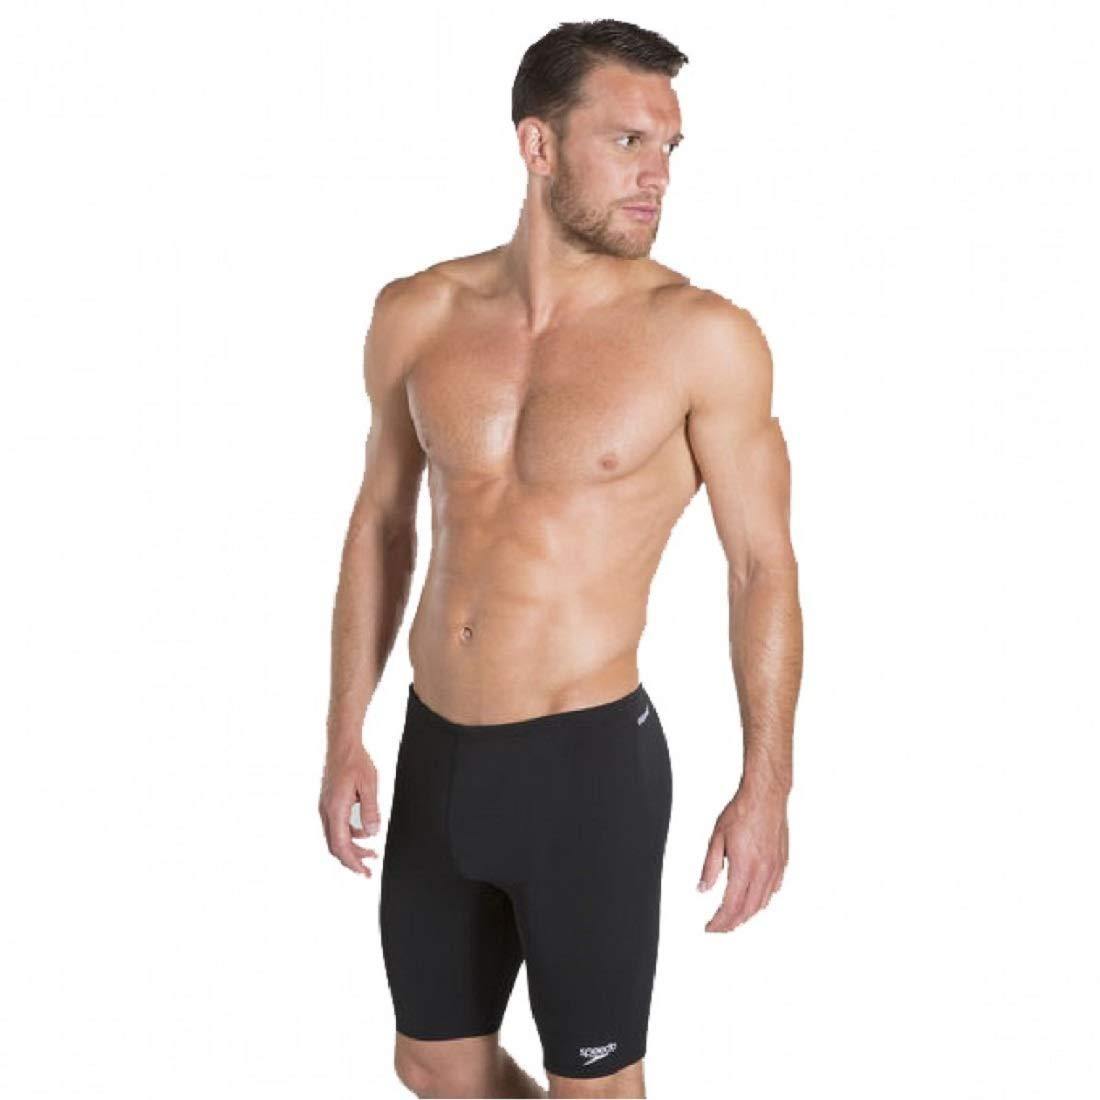 Speedo Male Swimwear Essential Houston Jammer Black - Best Price online Prokicksports.com